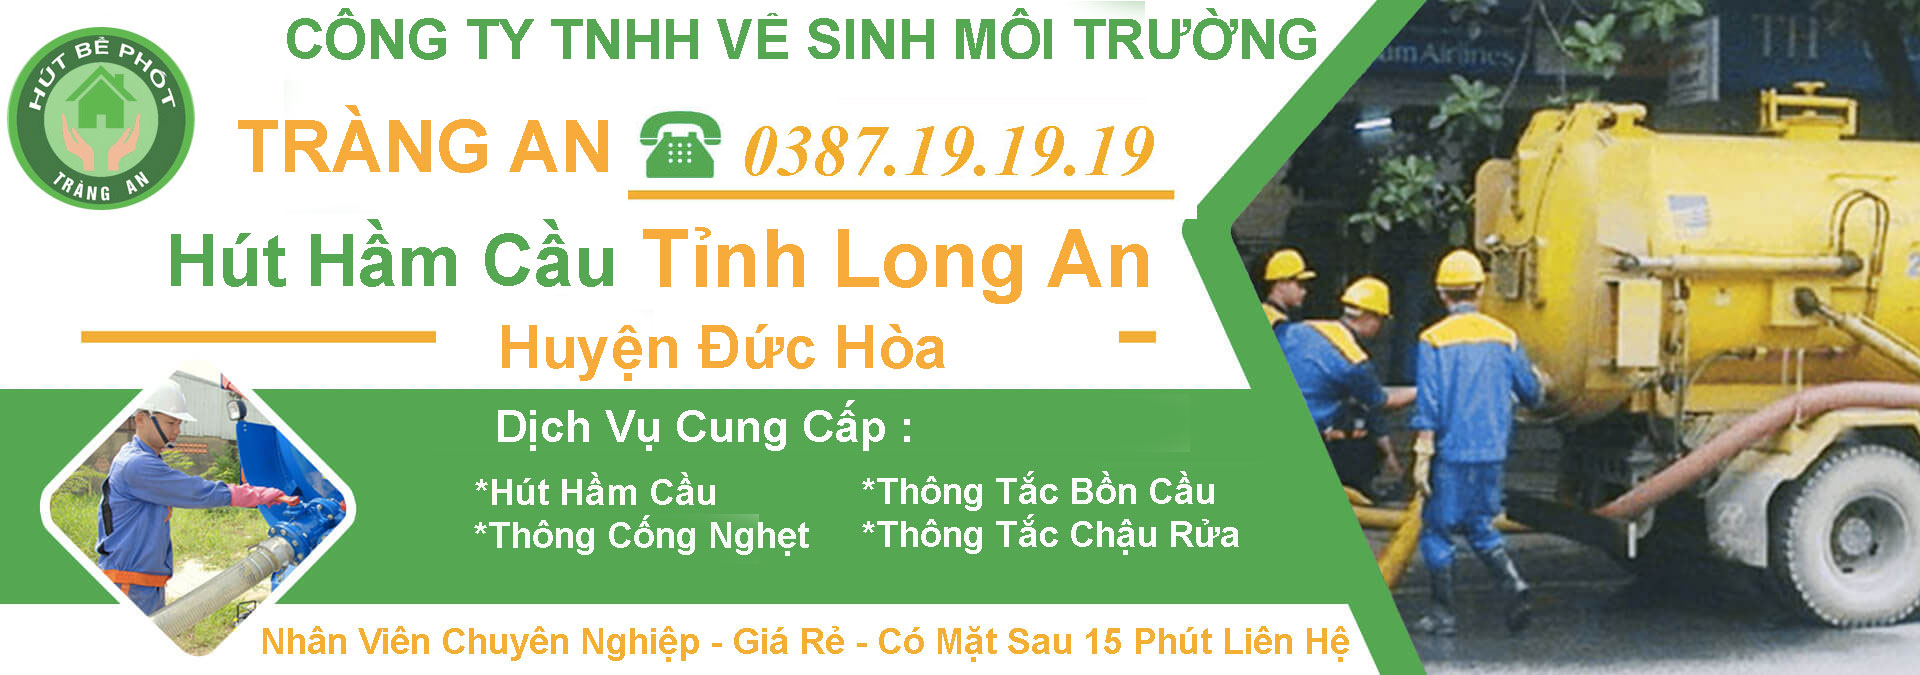 Hut Ham Cau Long An Huyen Duc Hoa